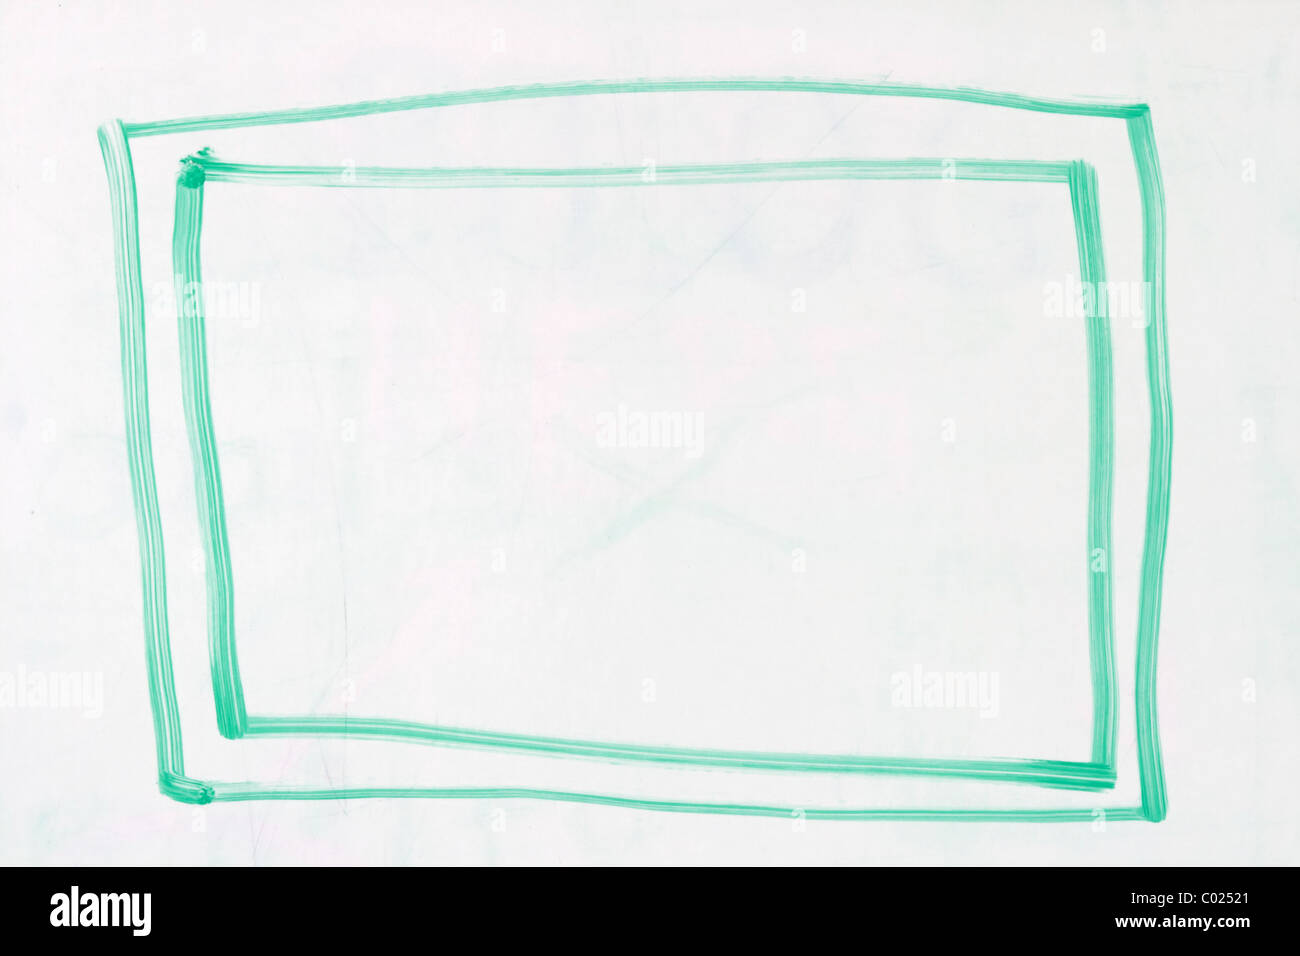 Caja con doble contorno en verde marcador de borrado en seco utilizados en una pizarra blanca Foto de stock